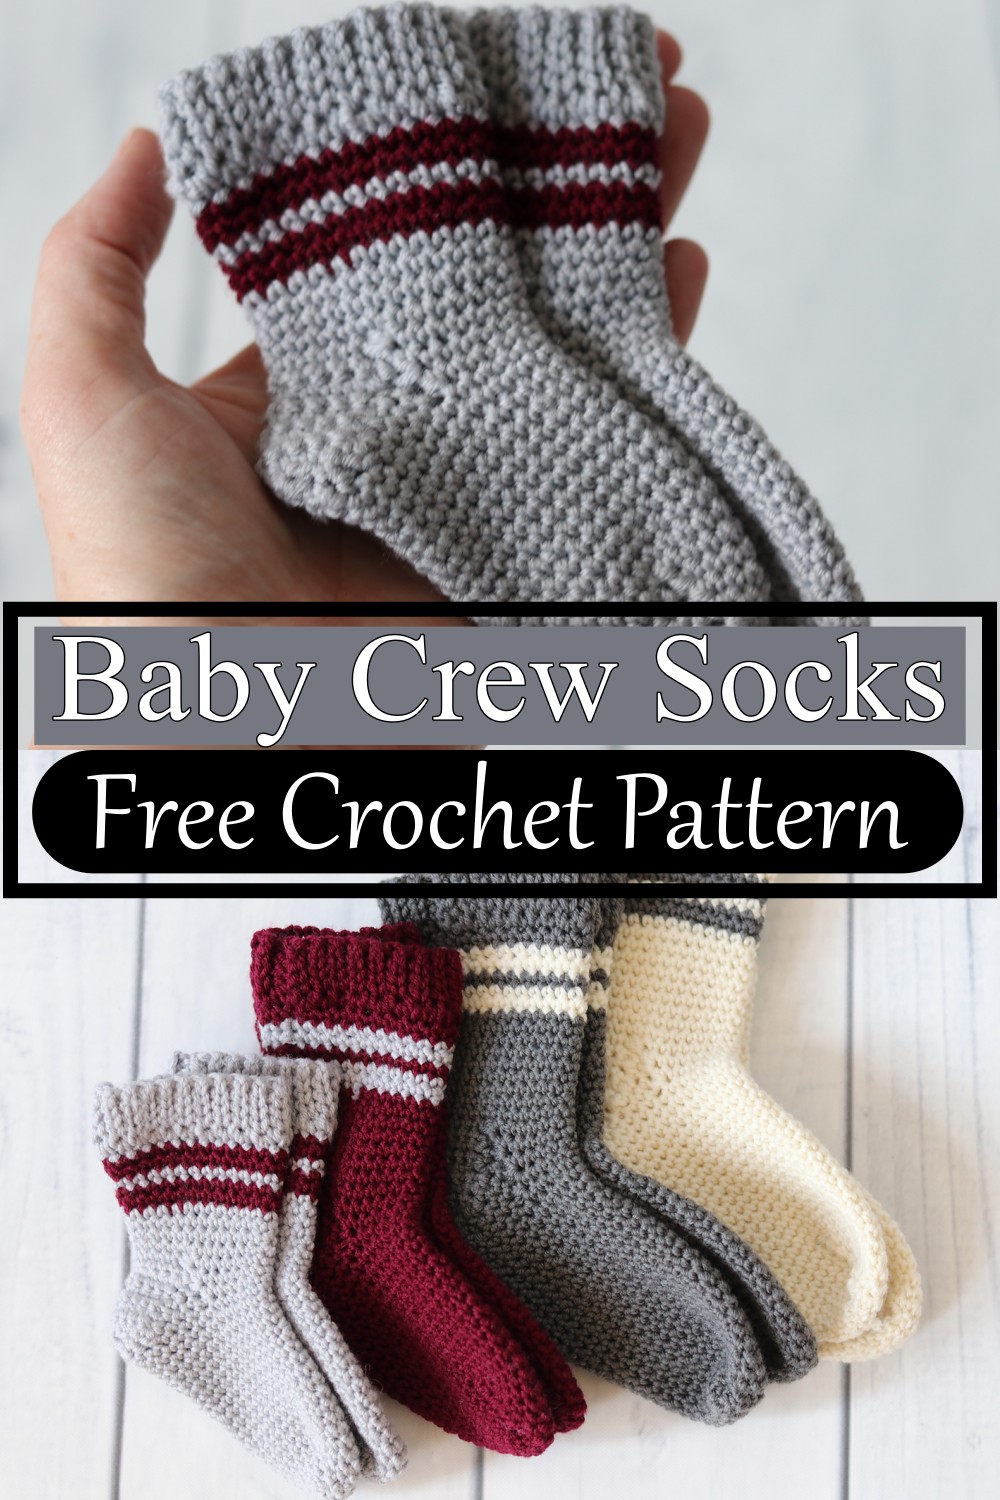 Baby Crew Socks